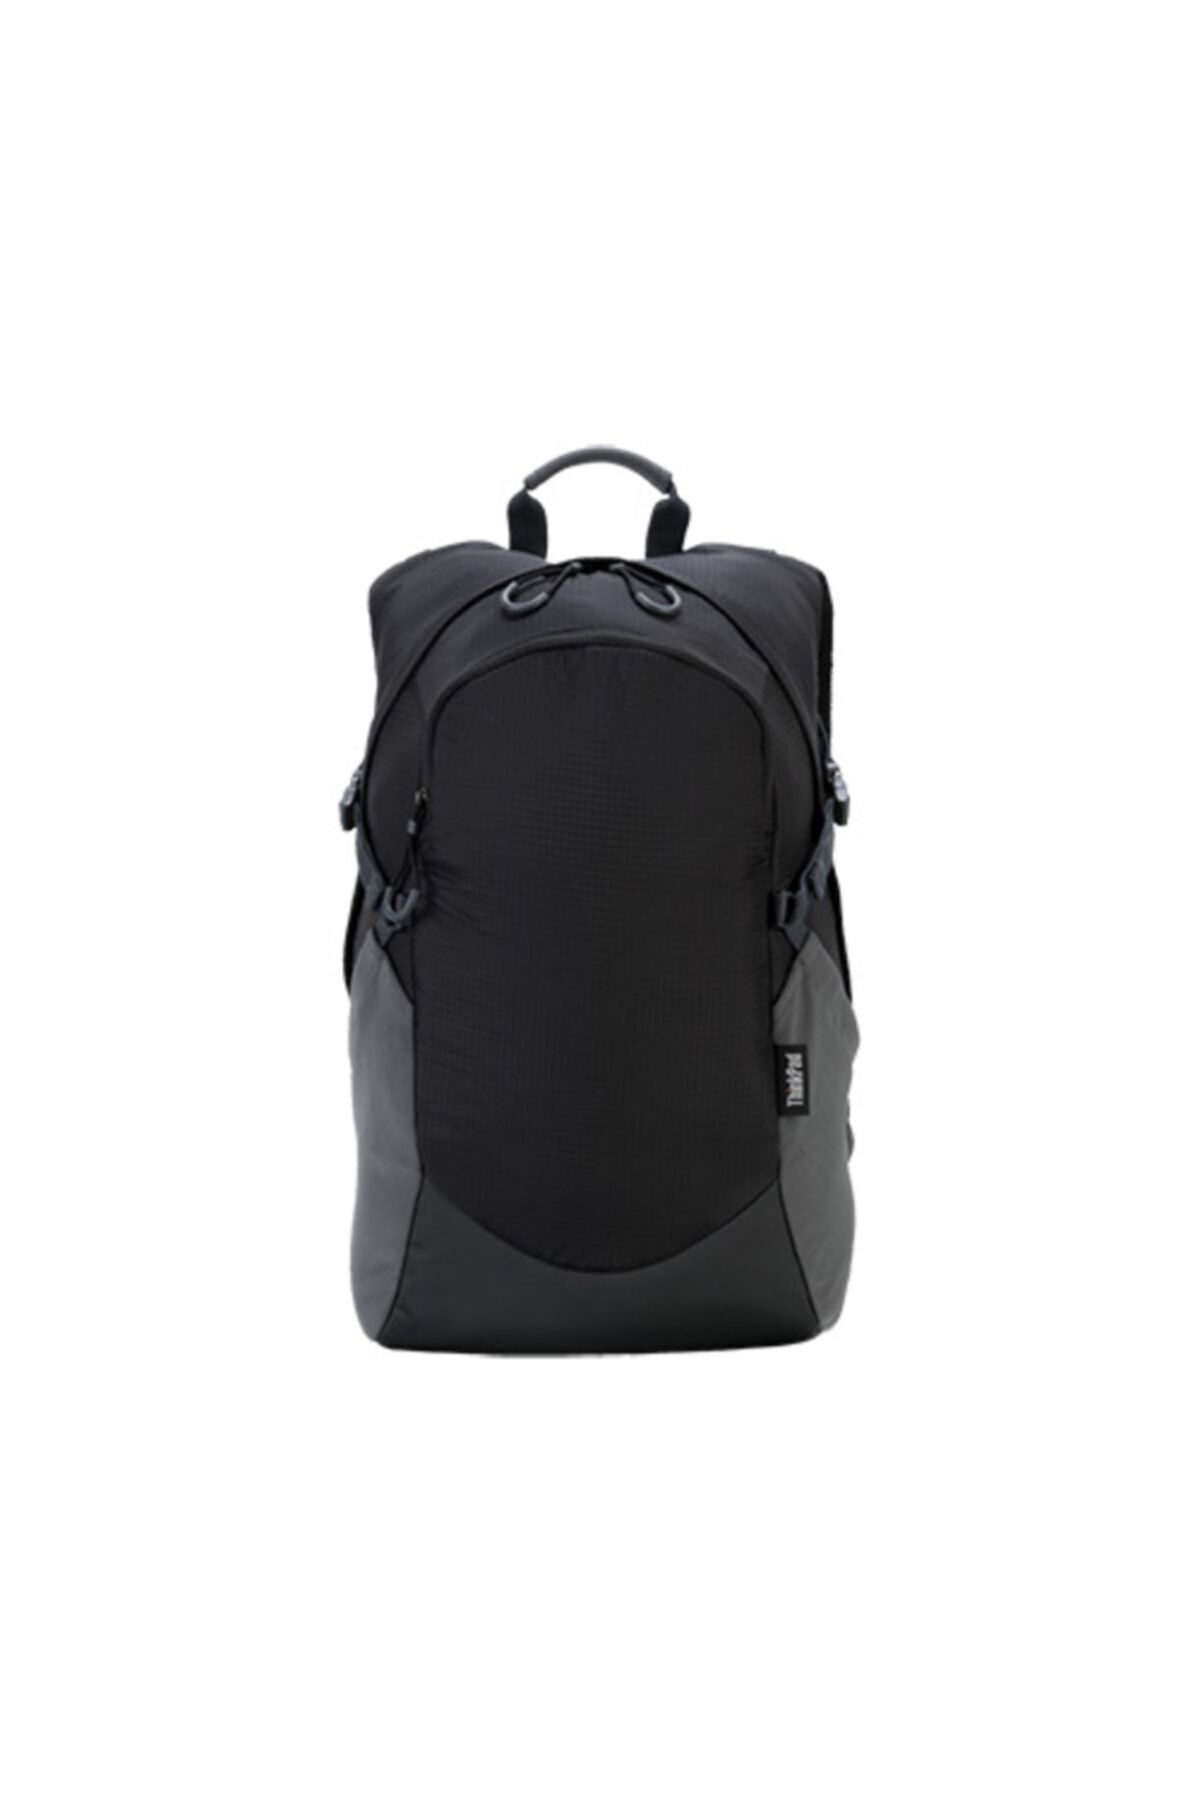 LENOVO Thinkpad 4x40l45611 15.6" Active Backpack Notebook Sırt Çantası